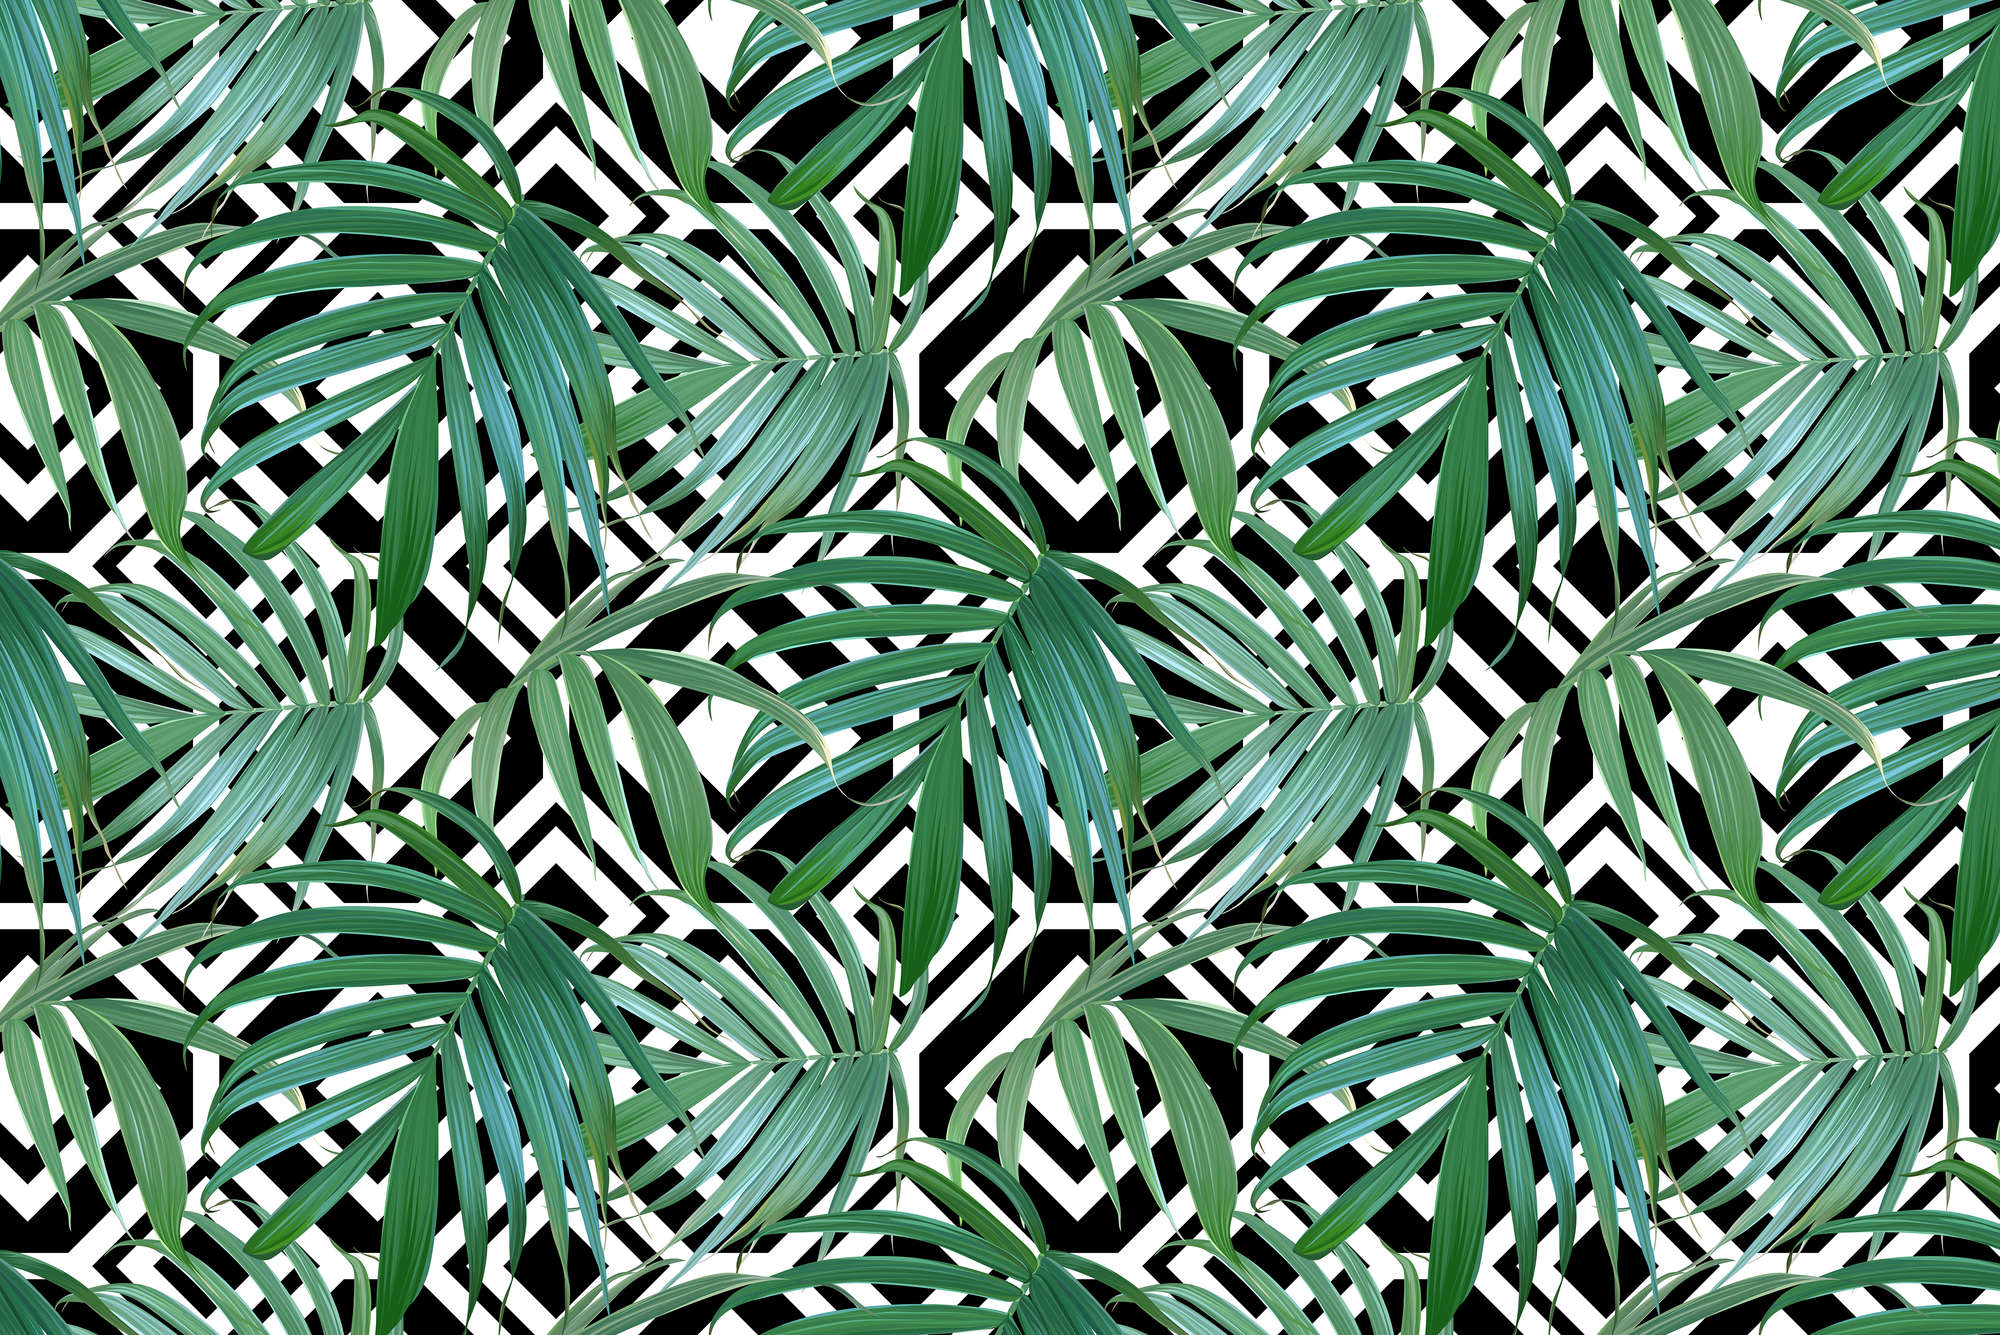             Papier peint graphique Jungle Plantes devant Noir Blanc Graphique sur intissé lisse mat
        